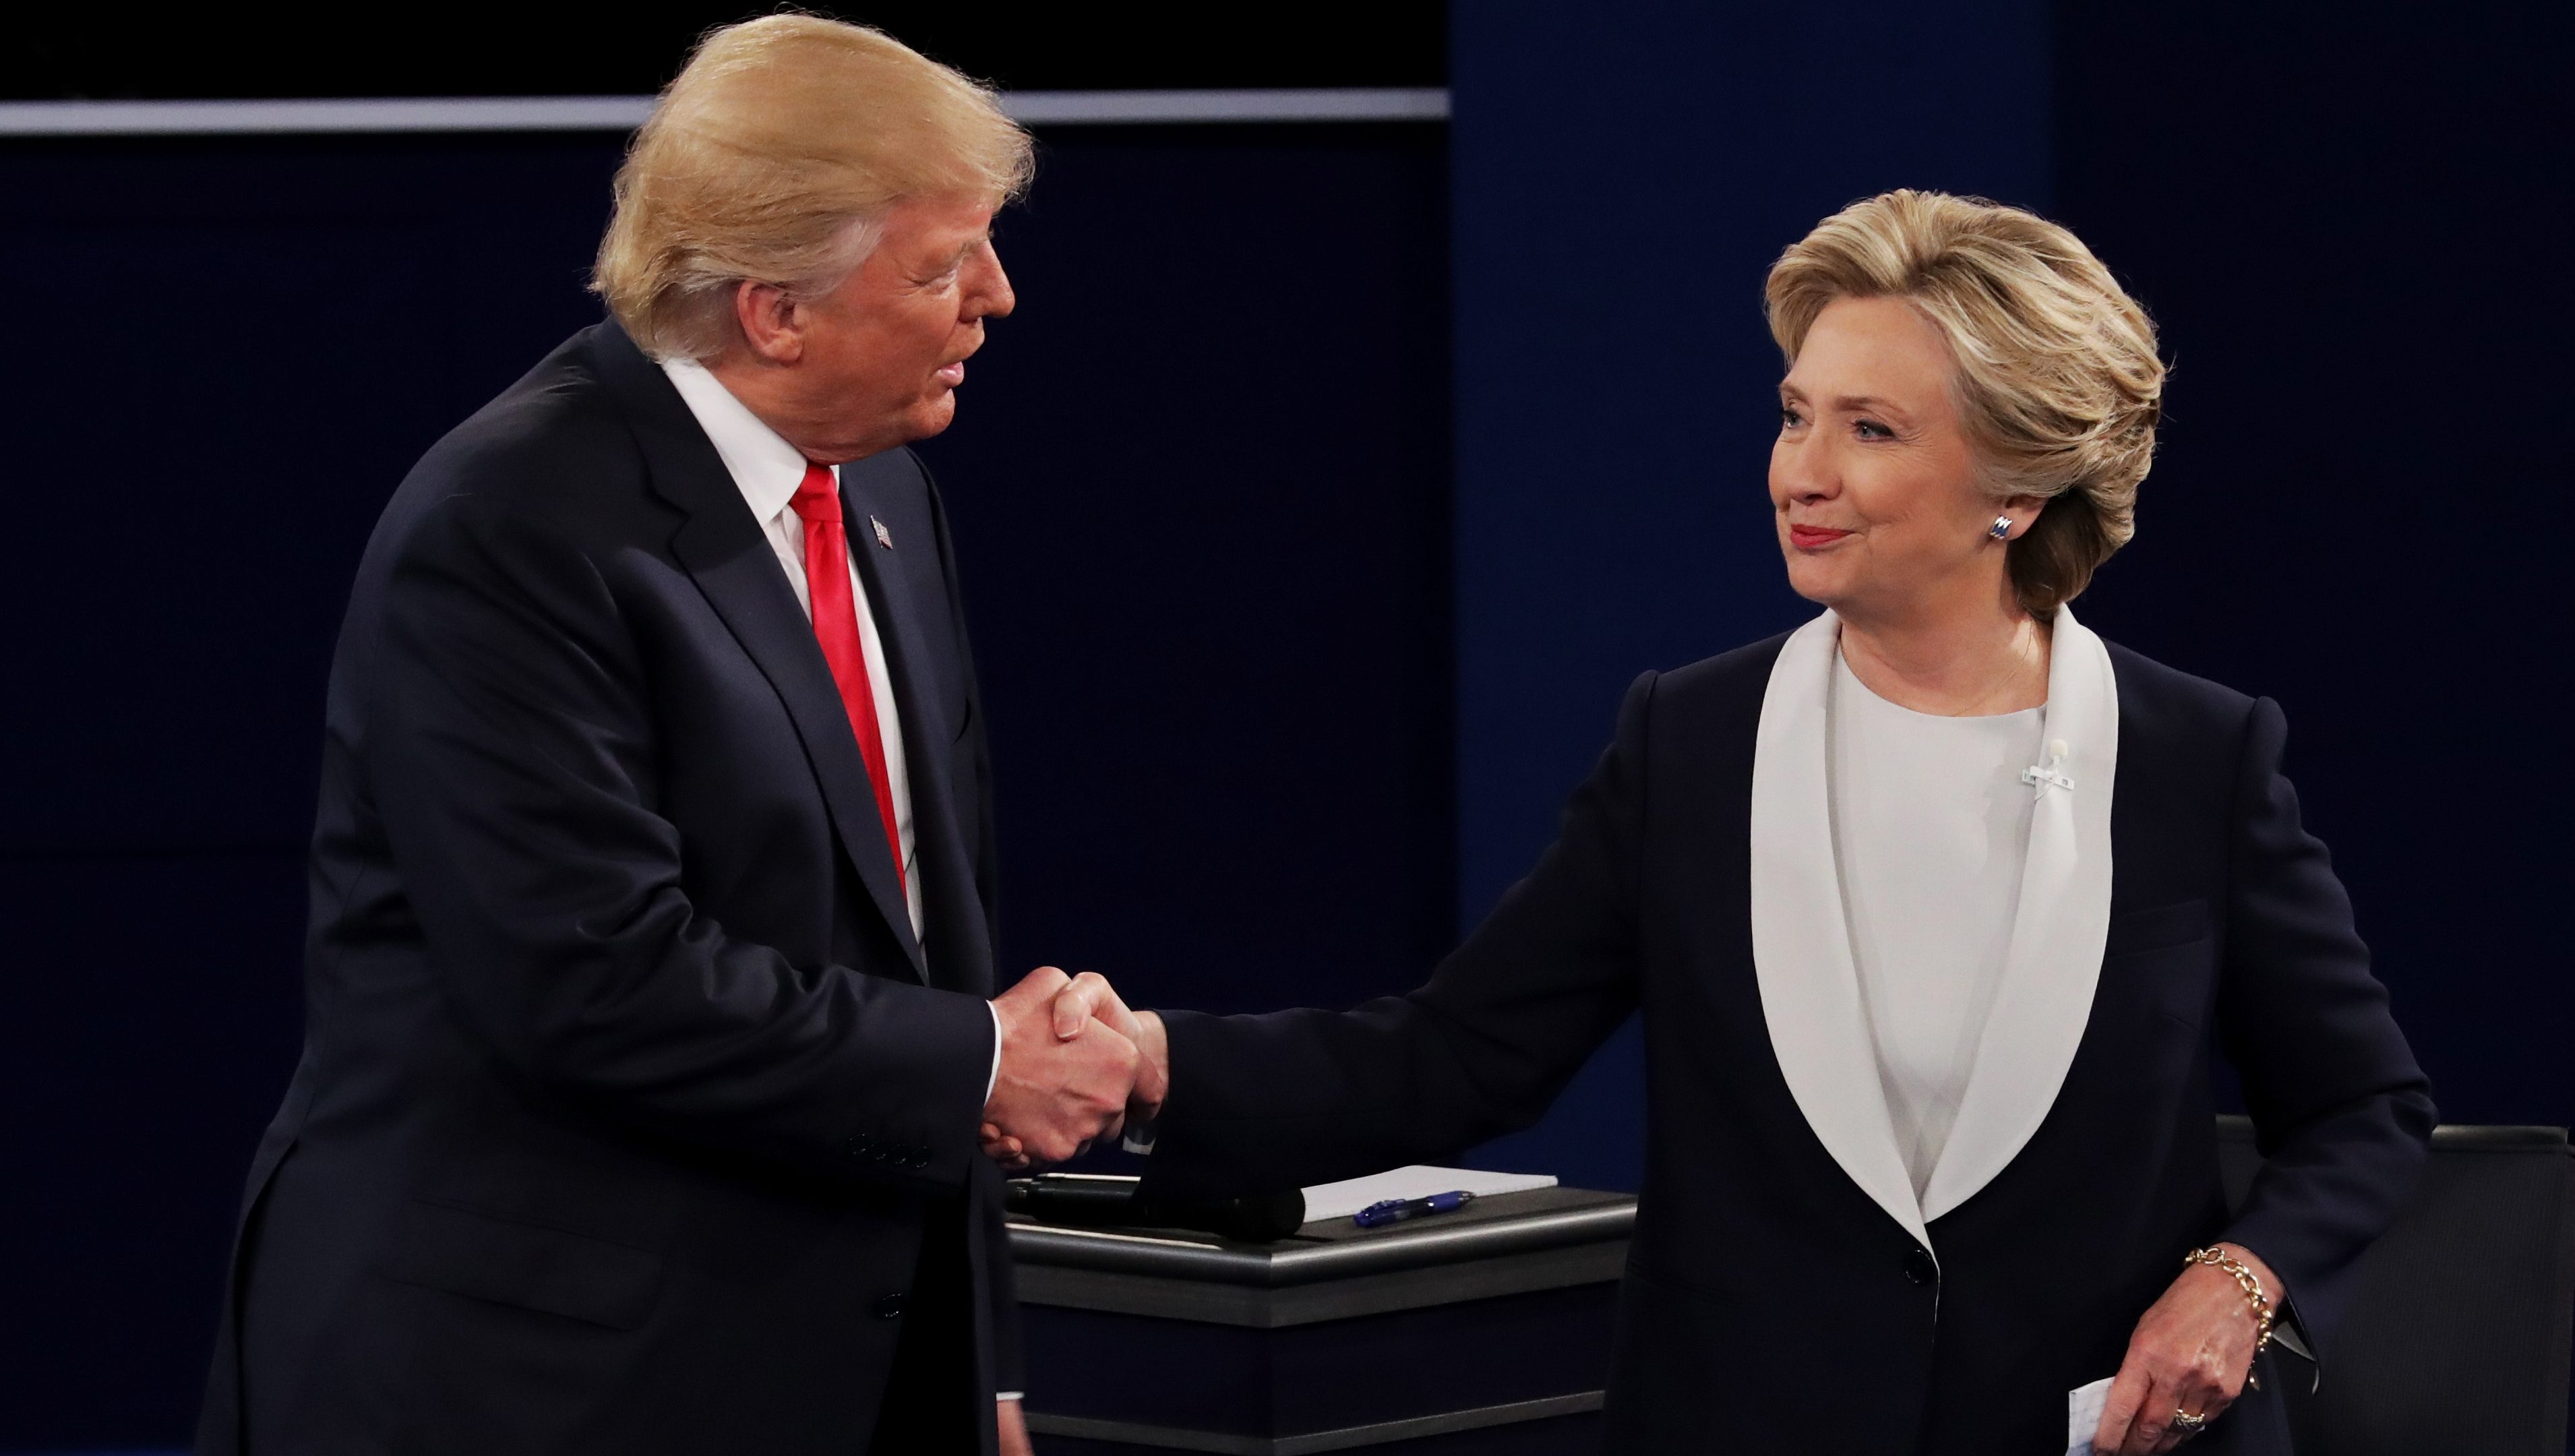 Watch Second Presidential Debate Full Video Replay 